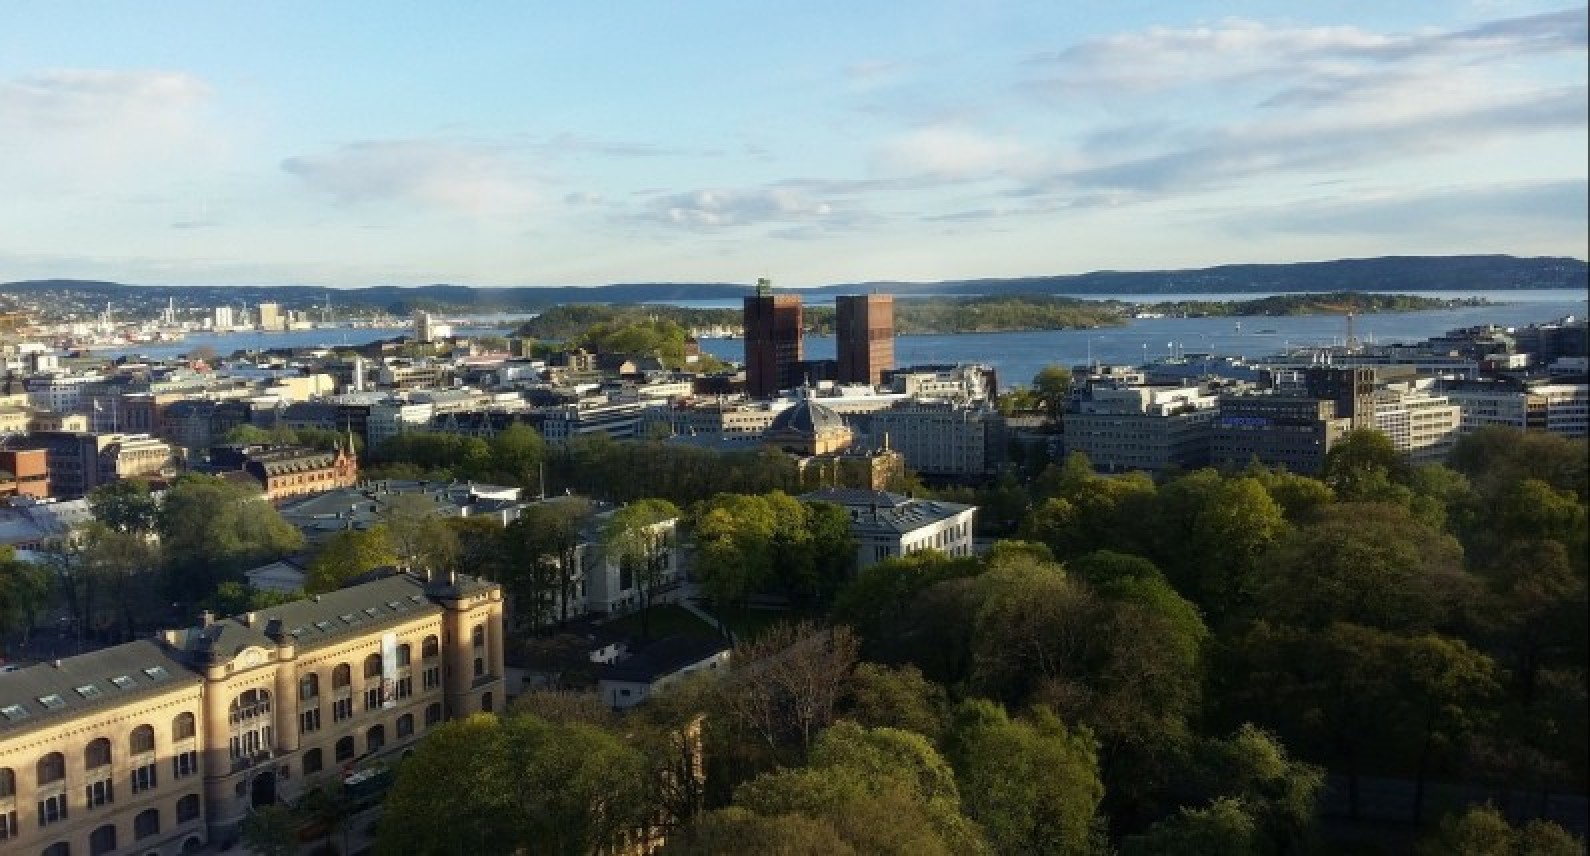 Rząd łagodzi obostrzenia w Nordre Follo i Ås. Sytuacja w Oslo wciąż niepewna